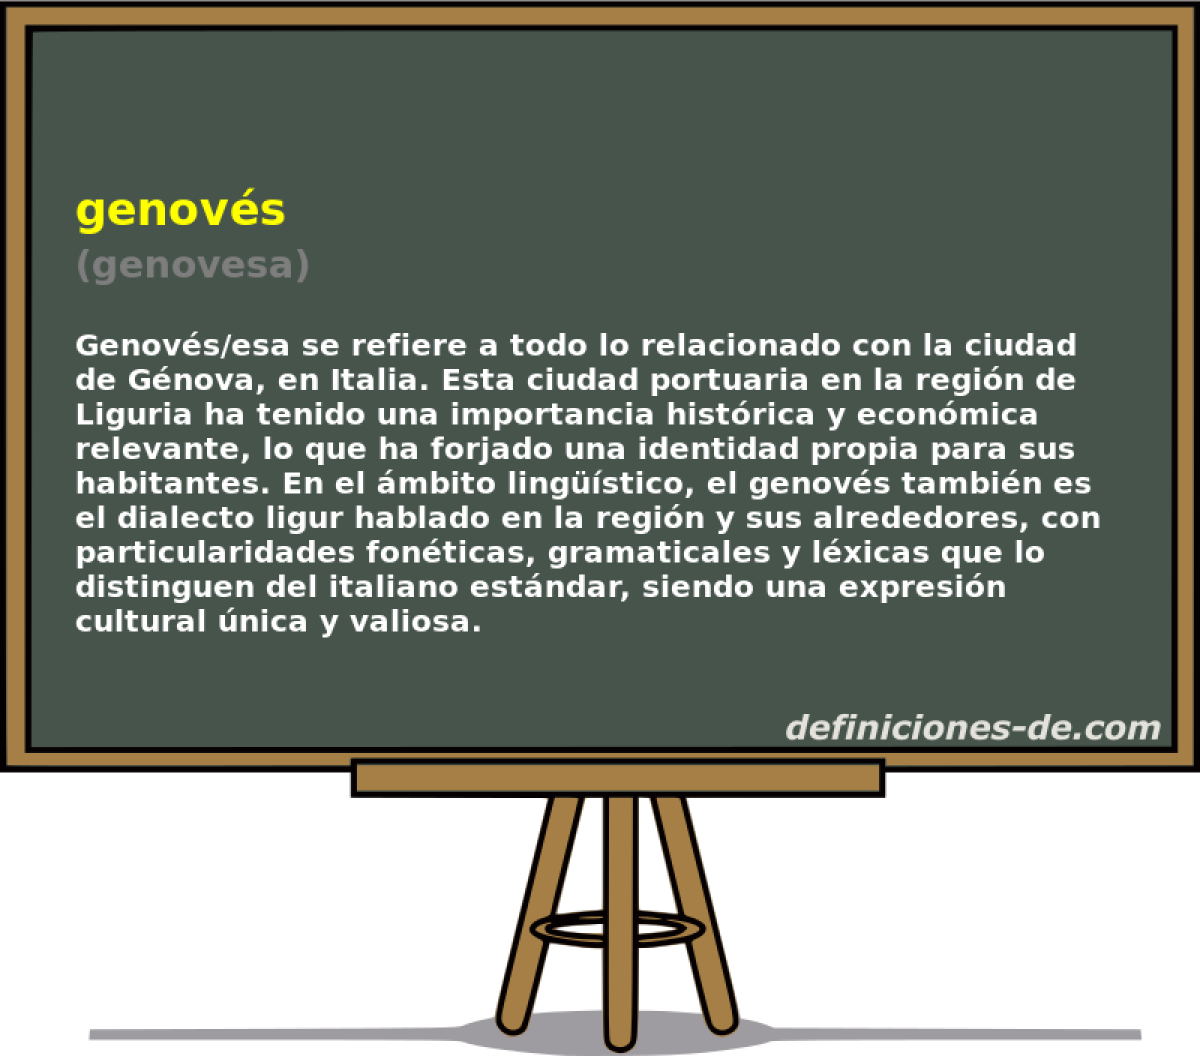 genovs (genovesa)